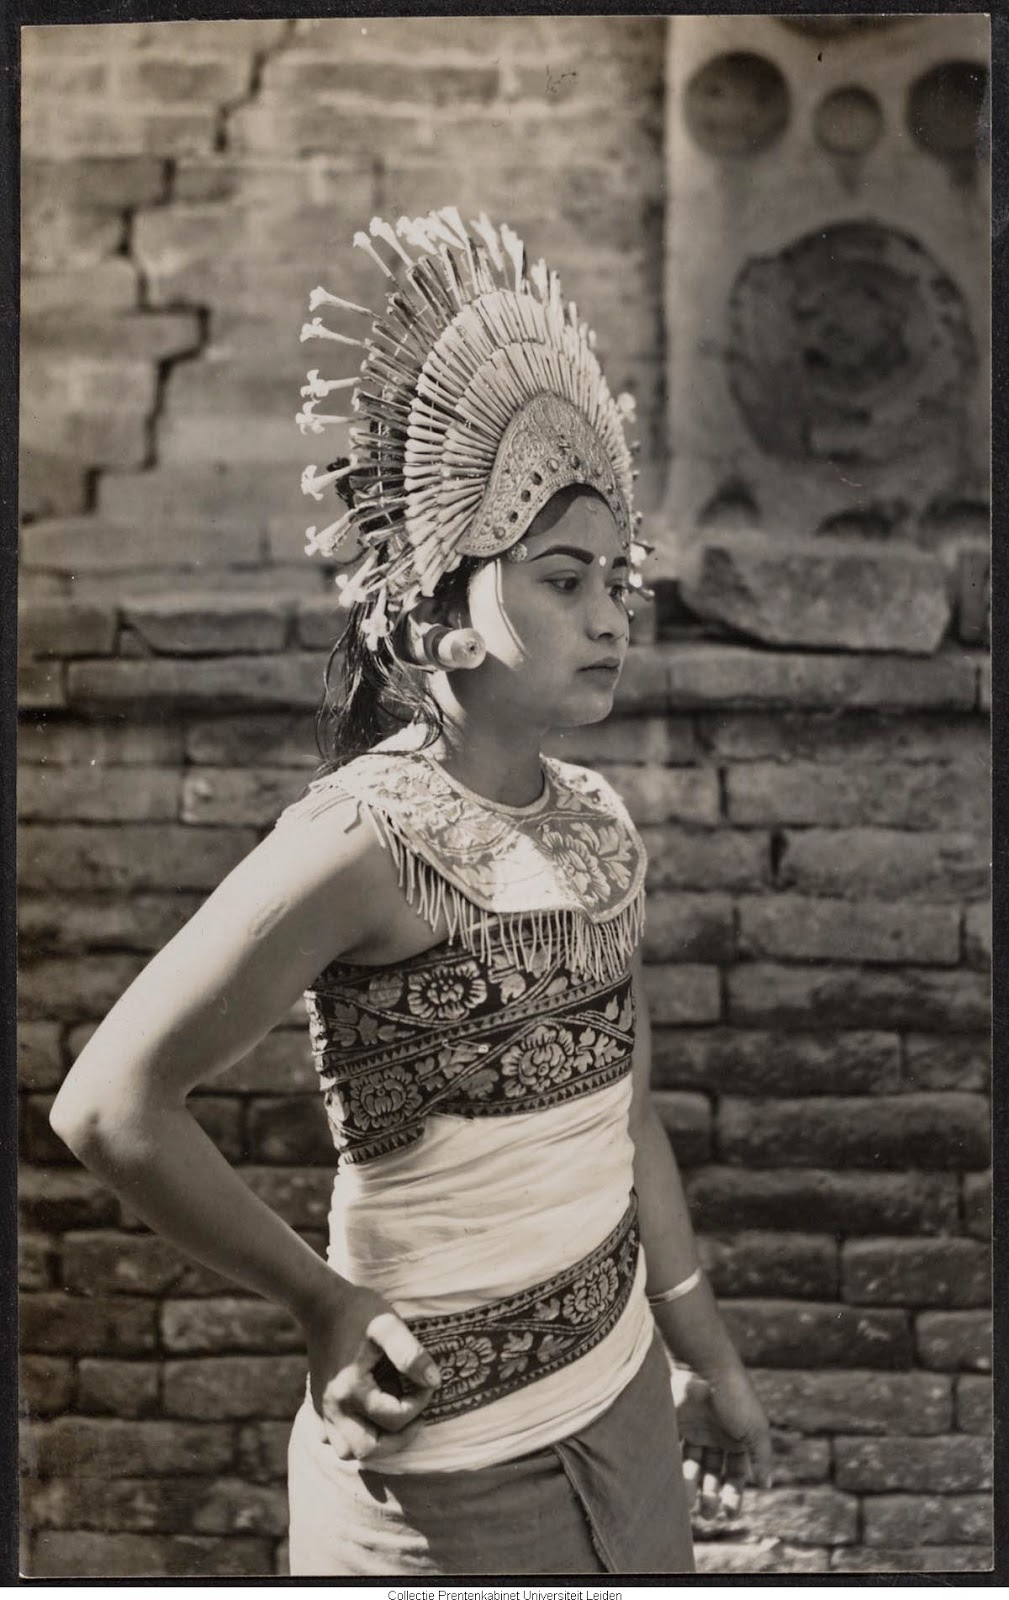 kumpulan-foto-gadis-bali-tempoe-doeloe-telanjang-dada-tahun-1910-1930-balinese-topless-girls-vintage-photography-27